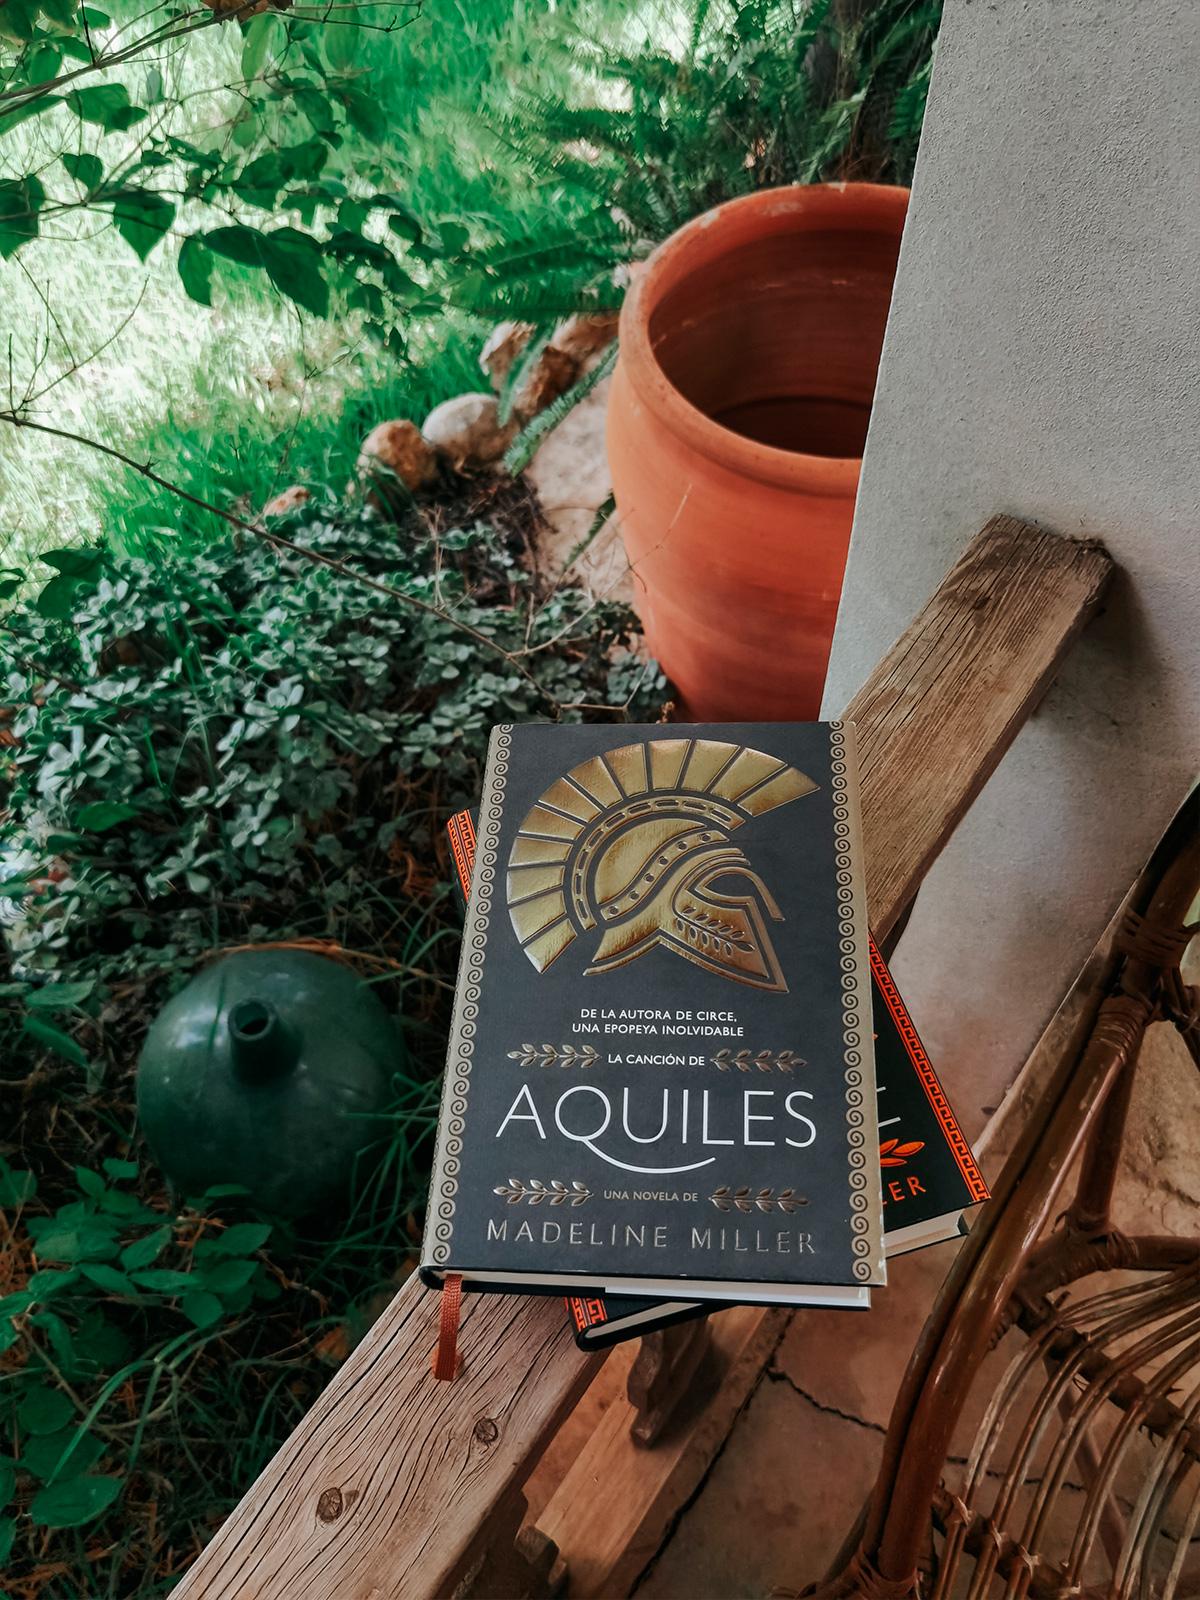 La canción de Aquiles, fotografía del libro en una terraza